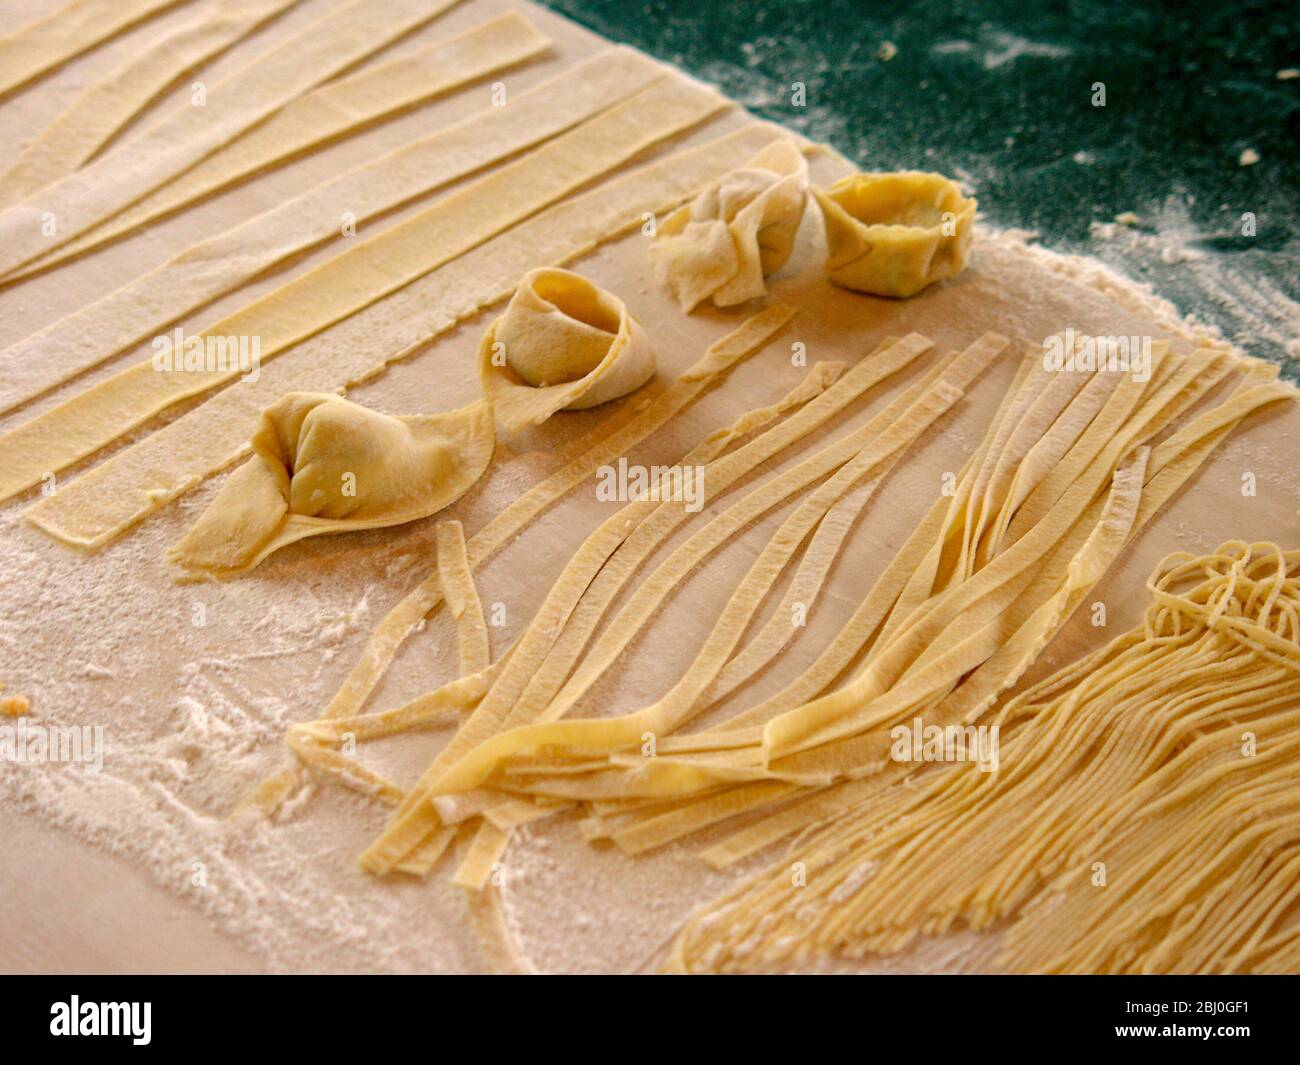 Beispiele für verschiedene Formen von Pasta aus ausgerollten Platten. - Stockfoto